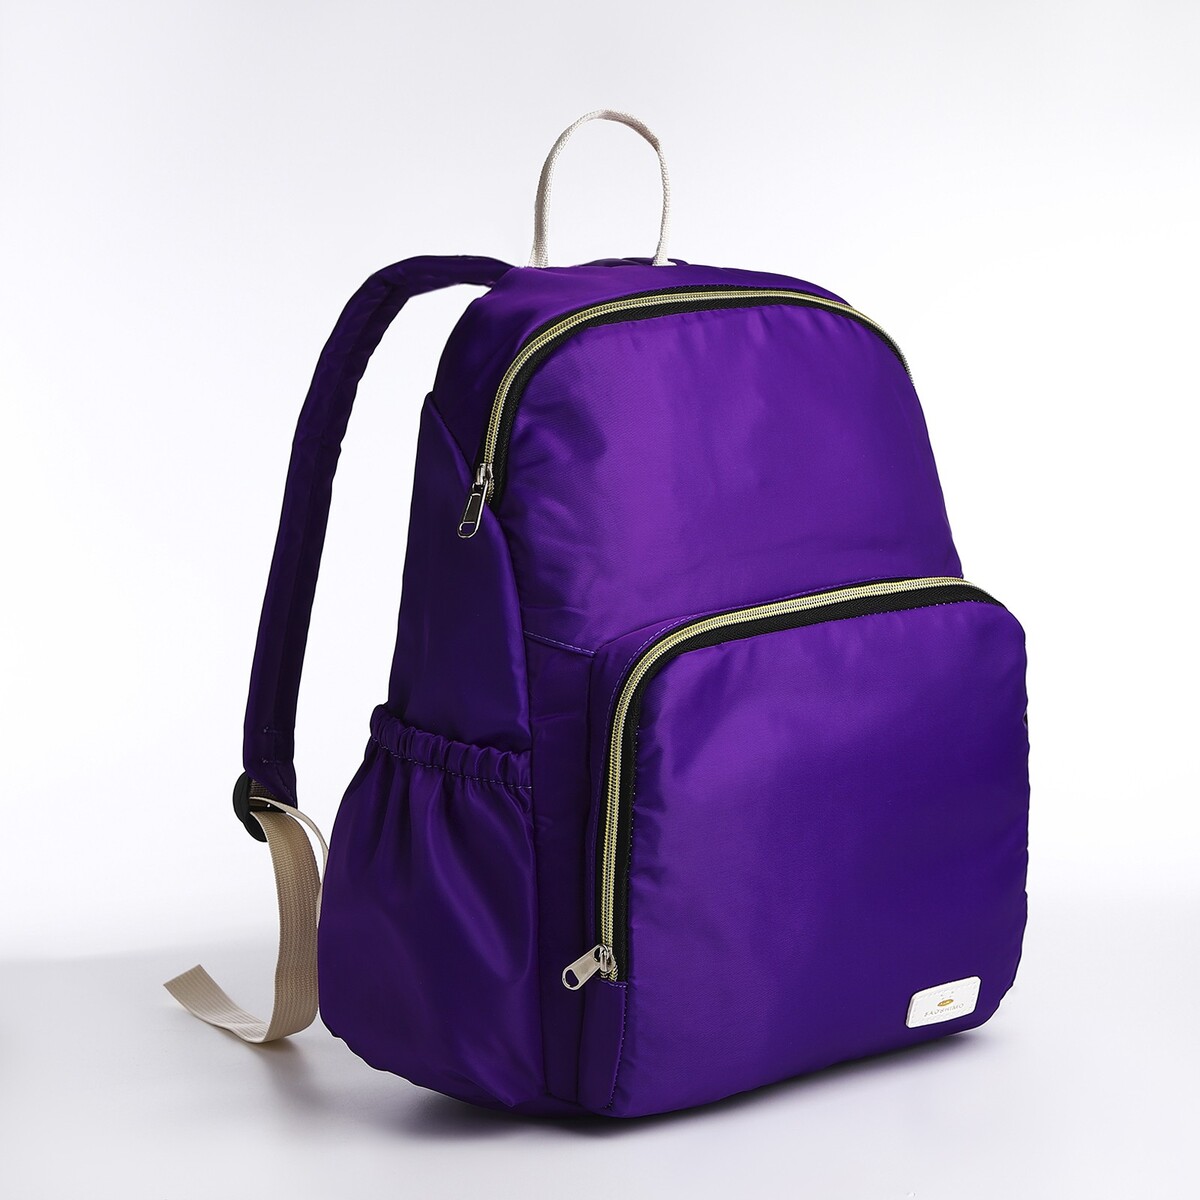 Рюкзак на молнии, цвет фиолетовый туалет средний с сеткой 36 х 26 х 6 5 см фиолетовый